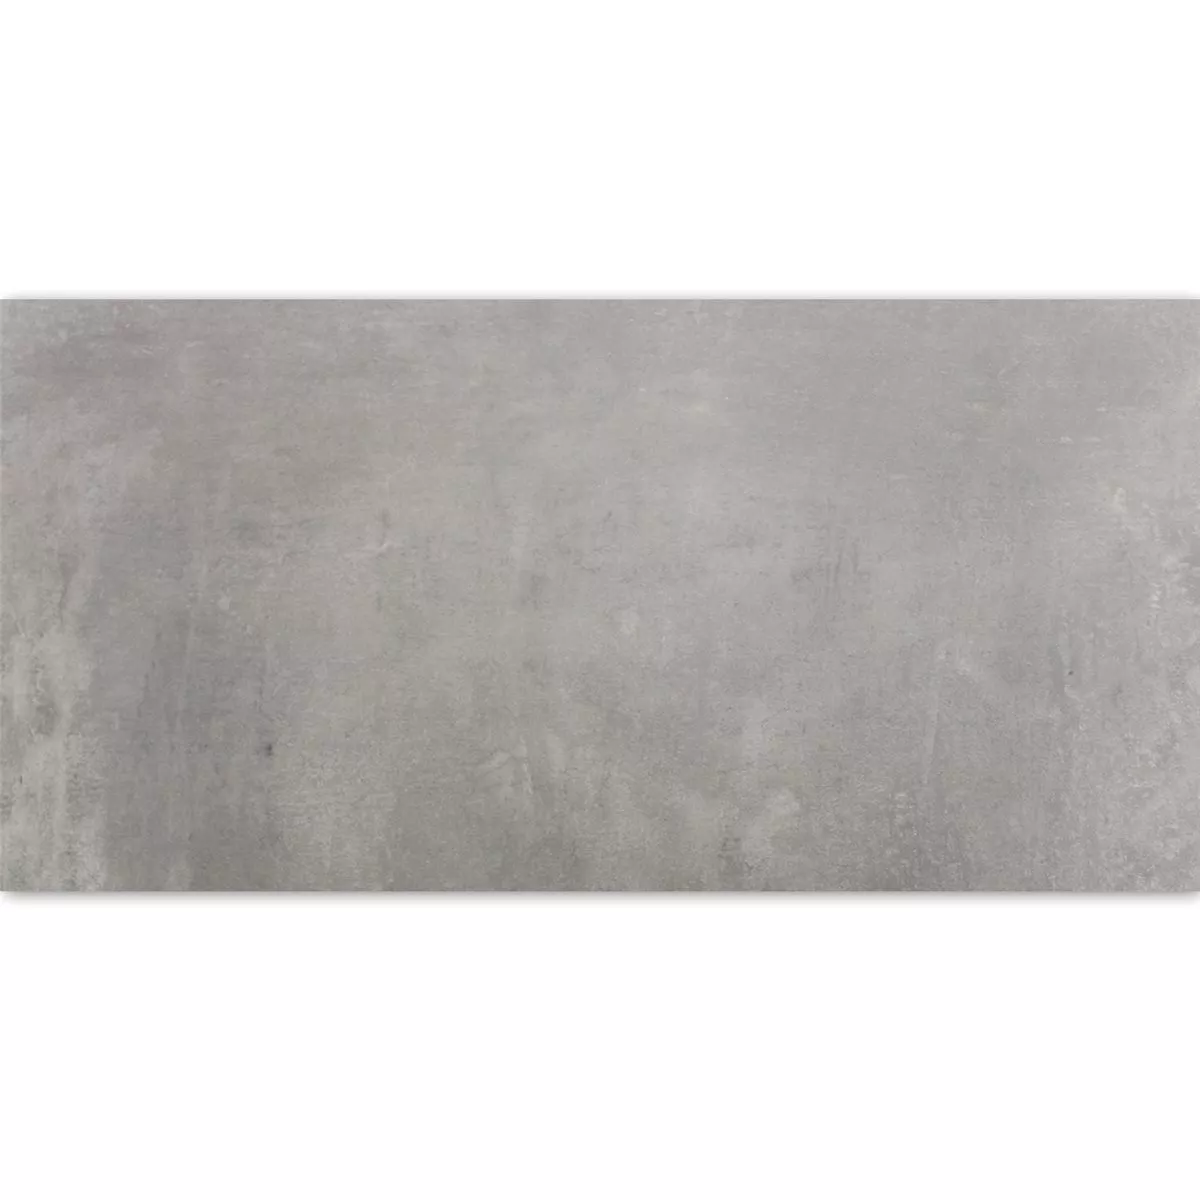 Πρότυπο Πλακάκια Δαπέδου Etna Ανοιχτό Γκρι Γυαλισμένο 30x60cm